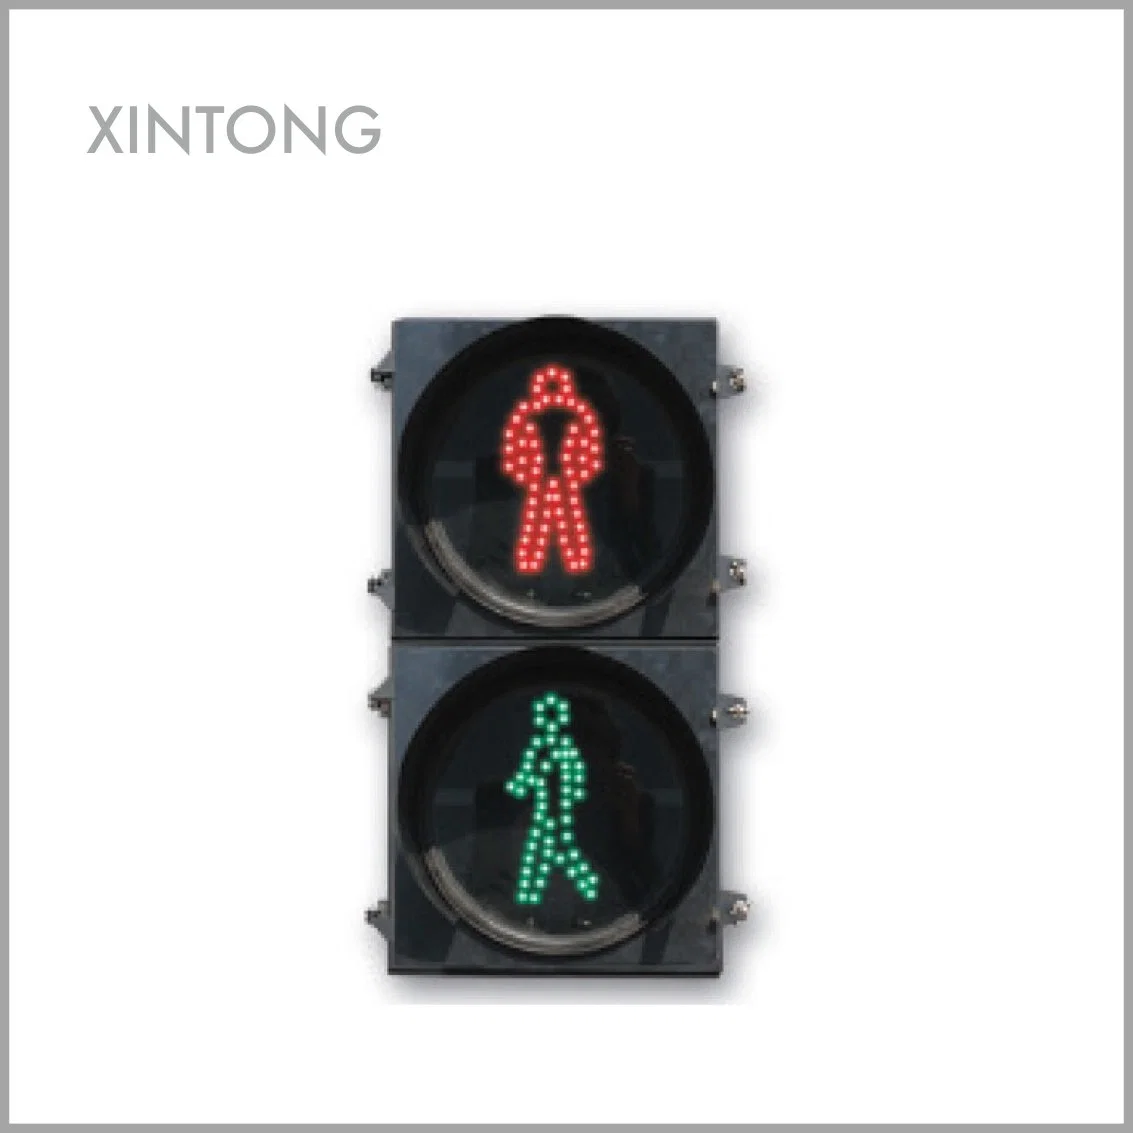 Véhicule Xintong par Carton témoin lumineux de signalisation routière à LED de 200 mm